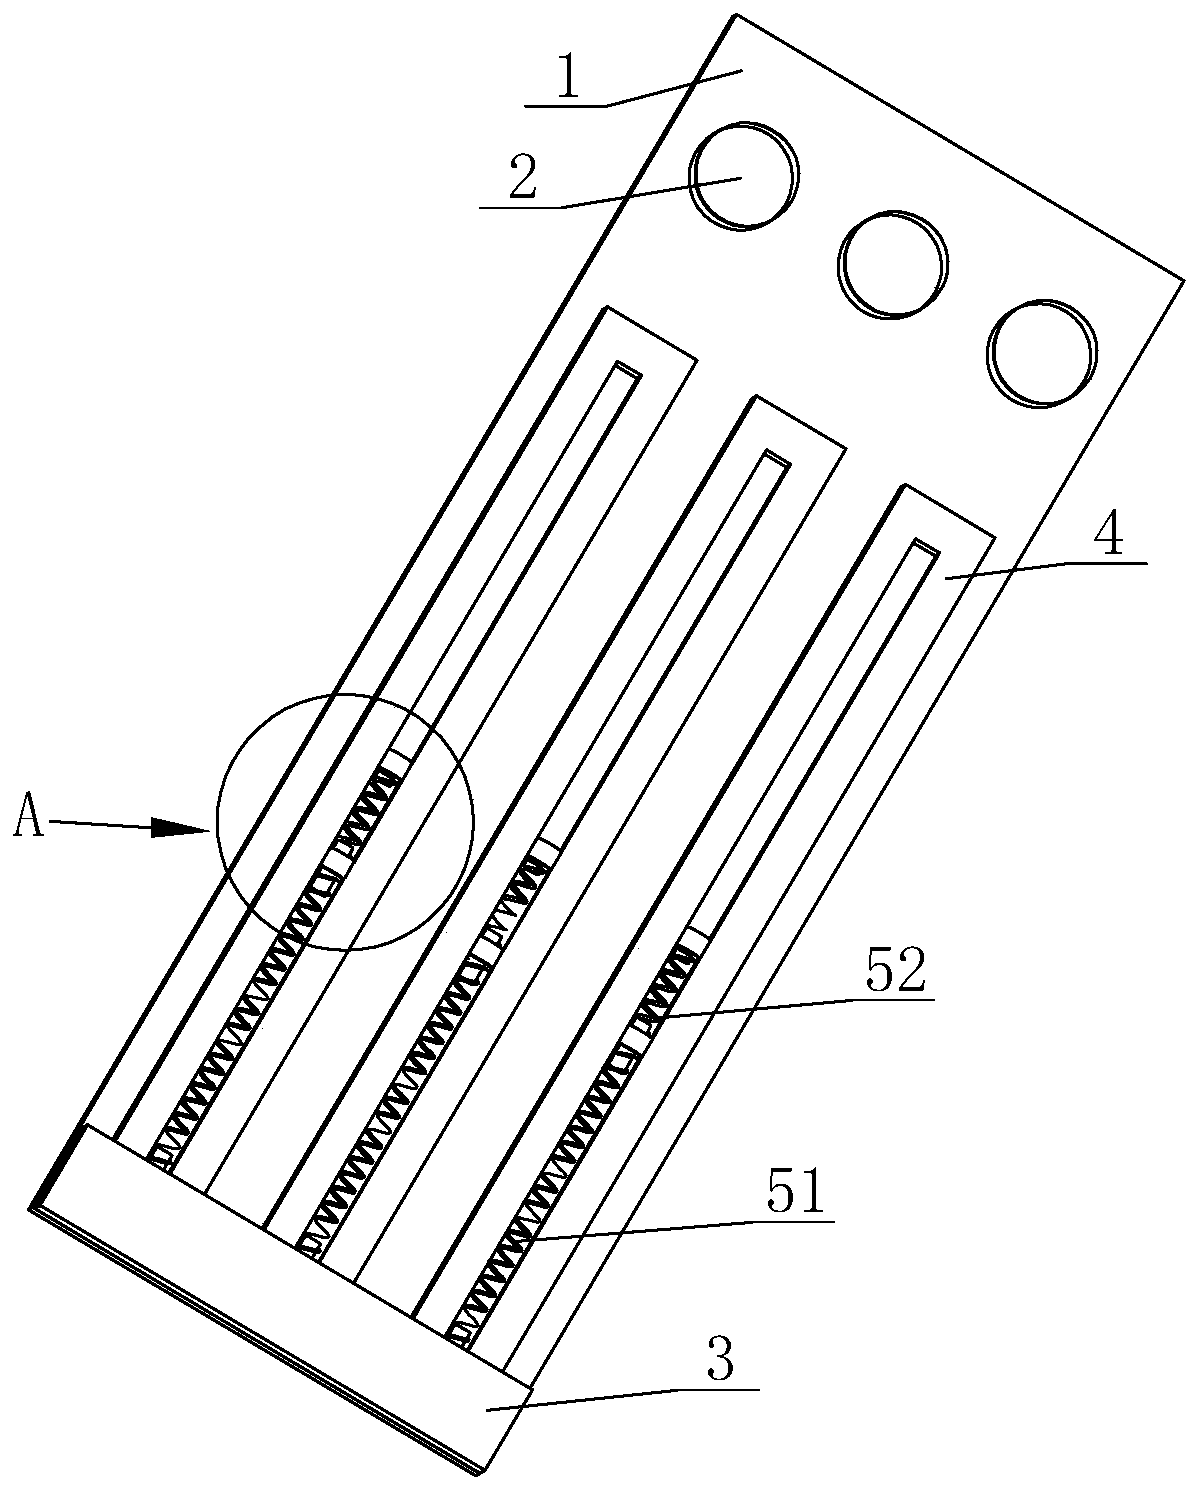 Sub-line bracing device